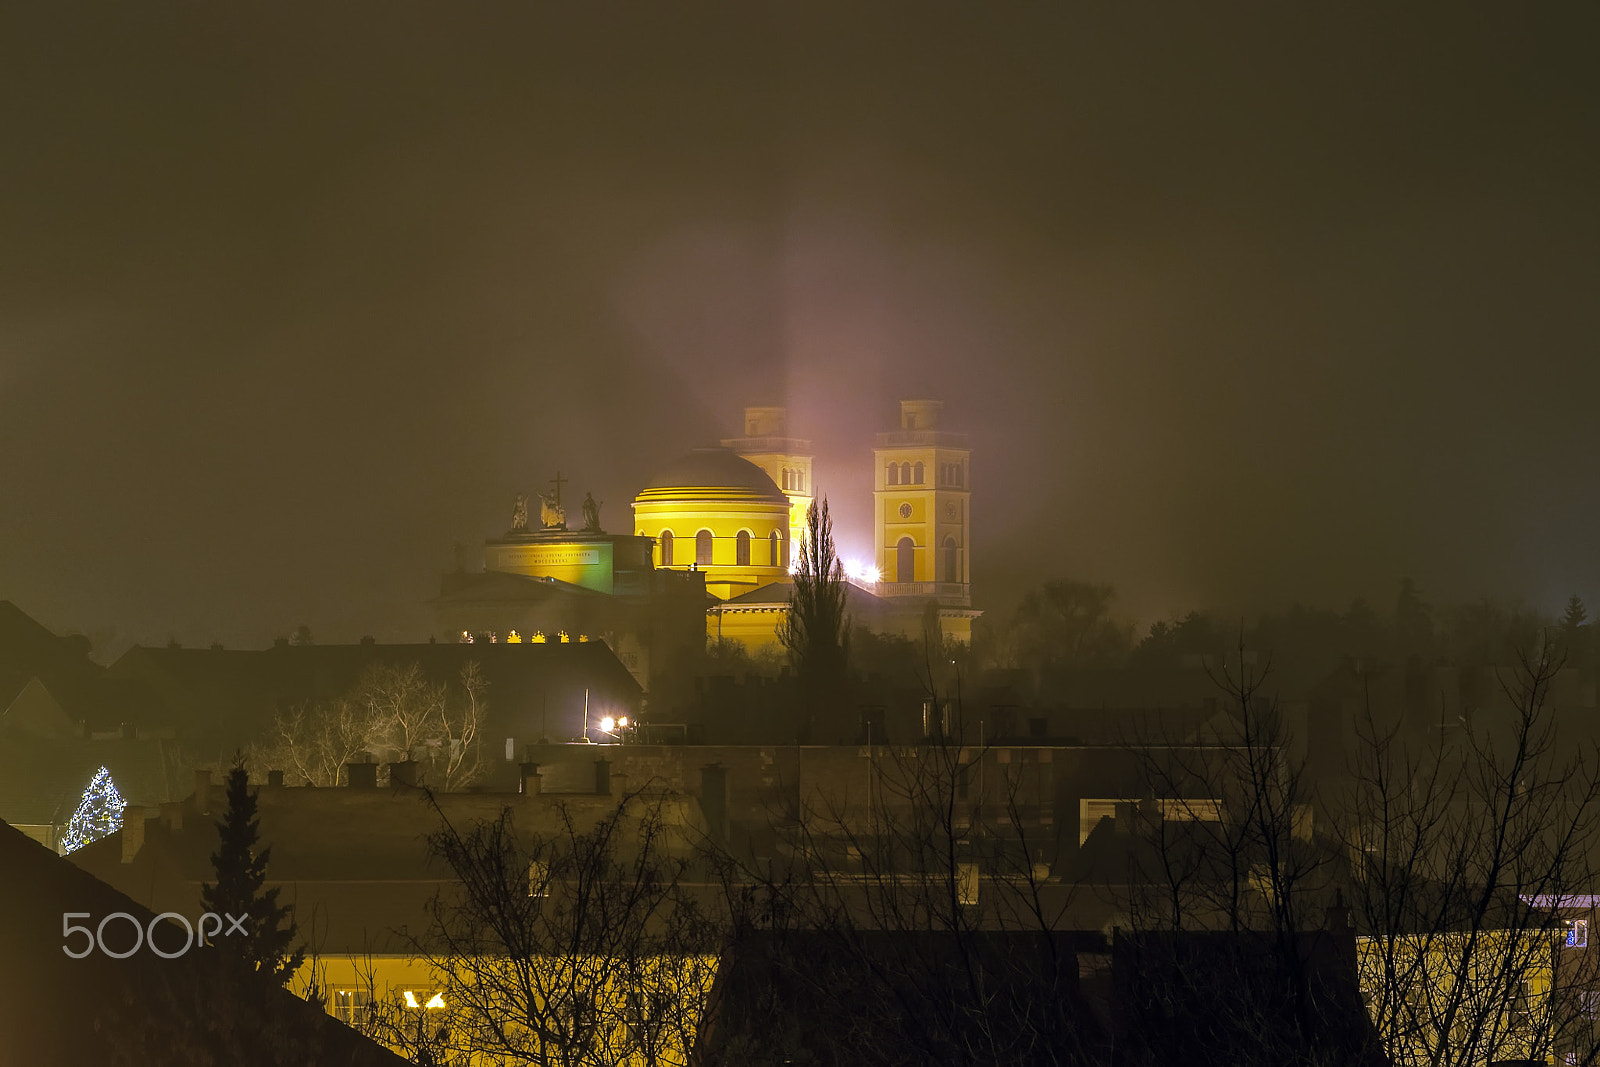 Nikon D90 + Tamron AF 28-75mm F2.8 XR Di LD Aspherical (IF) sample photo. Eger bazilika at night photography